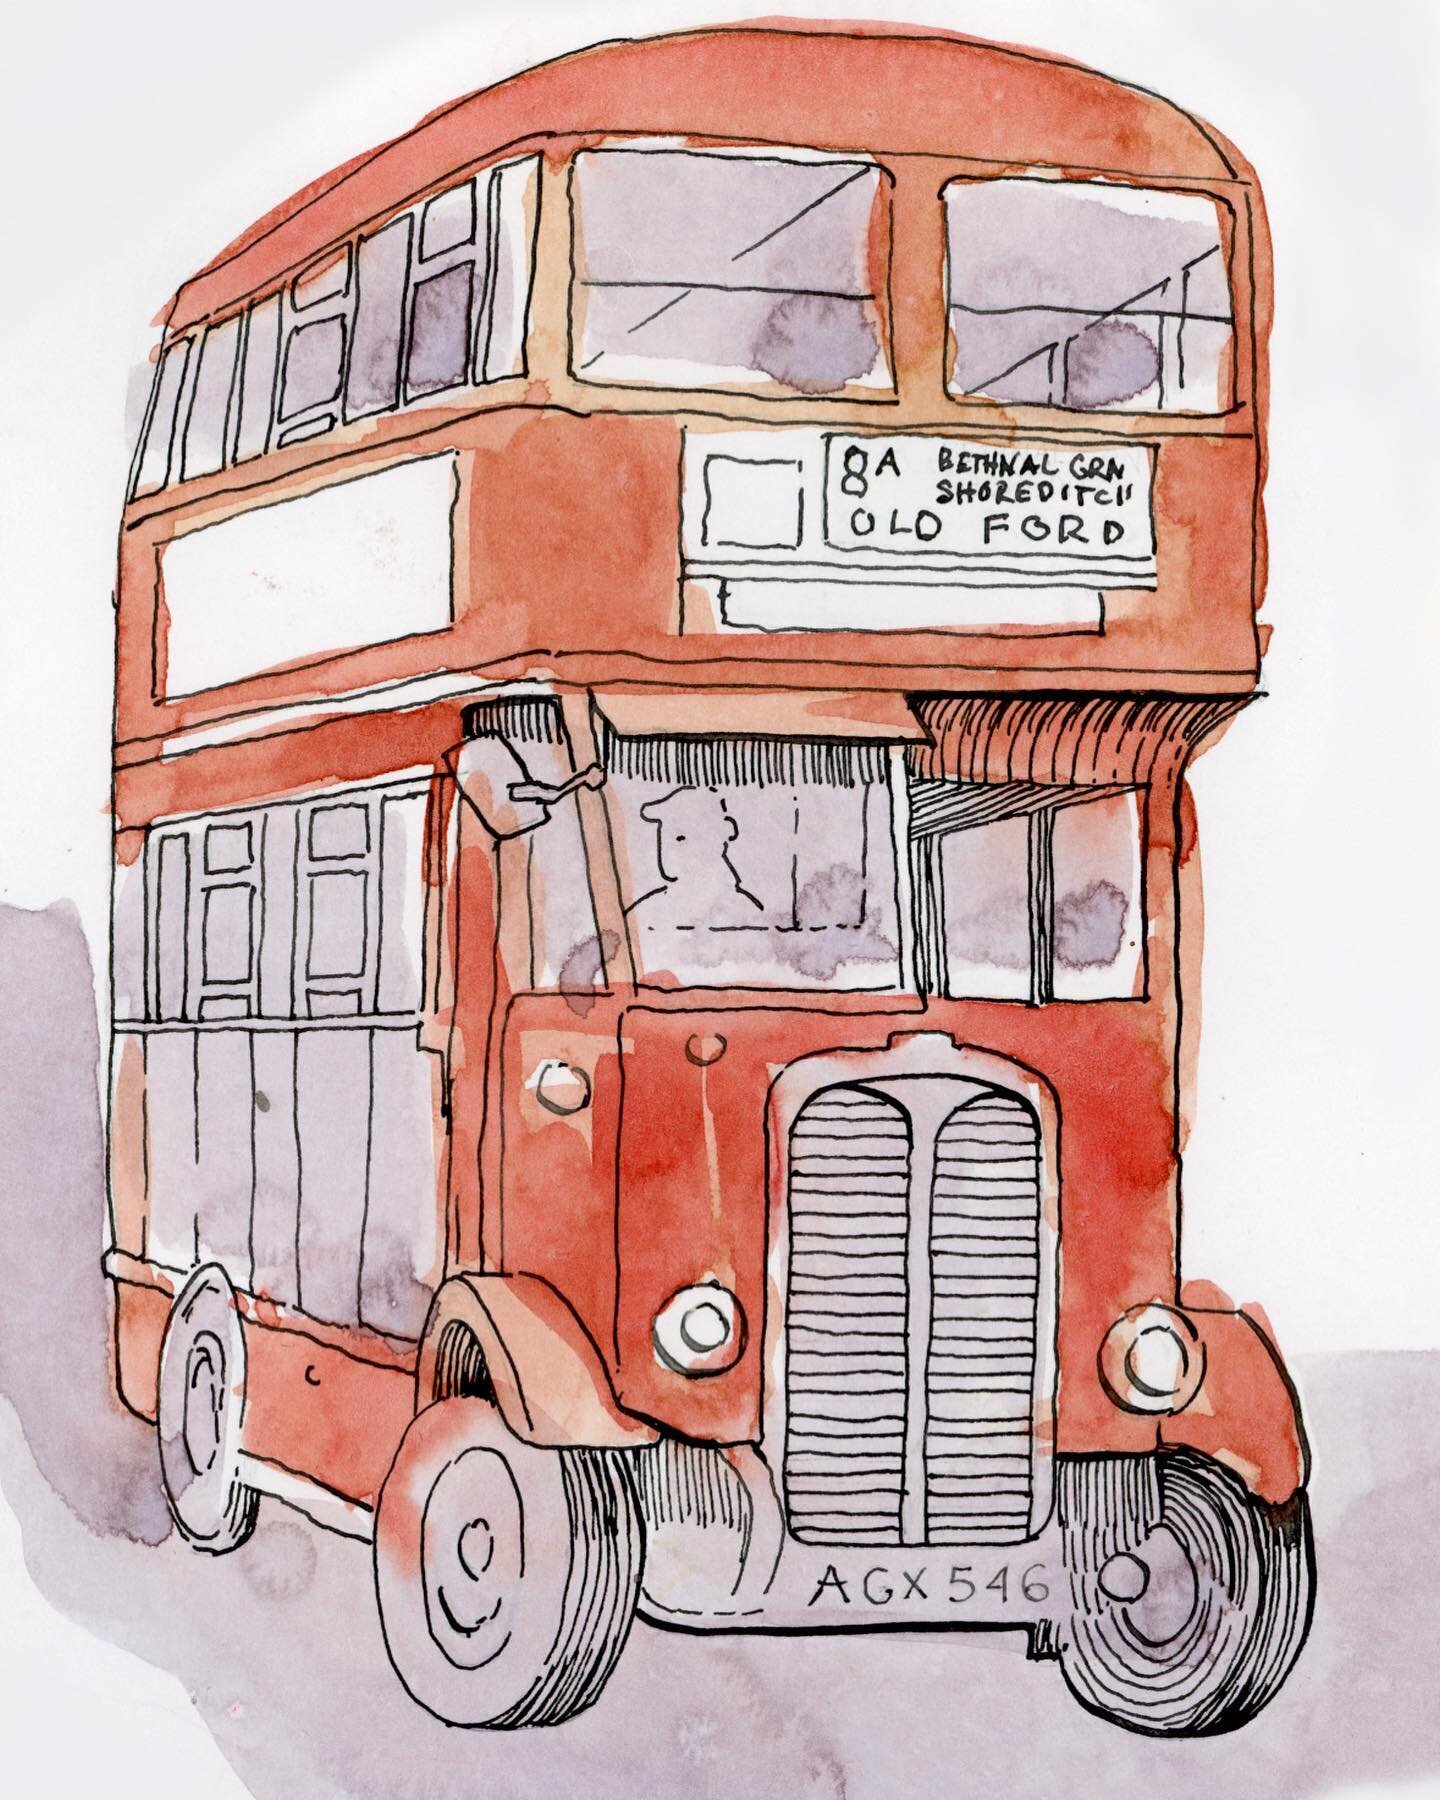 Double decker bus 

#watercolor #sketchbook #childrensbookillustrator #picturebookillustration #kidlitillustrator #kidlit #kidlitpostcard